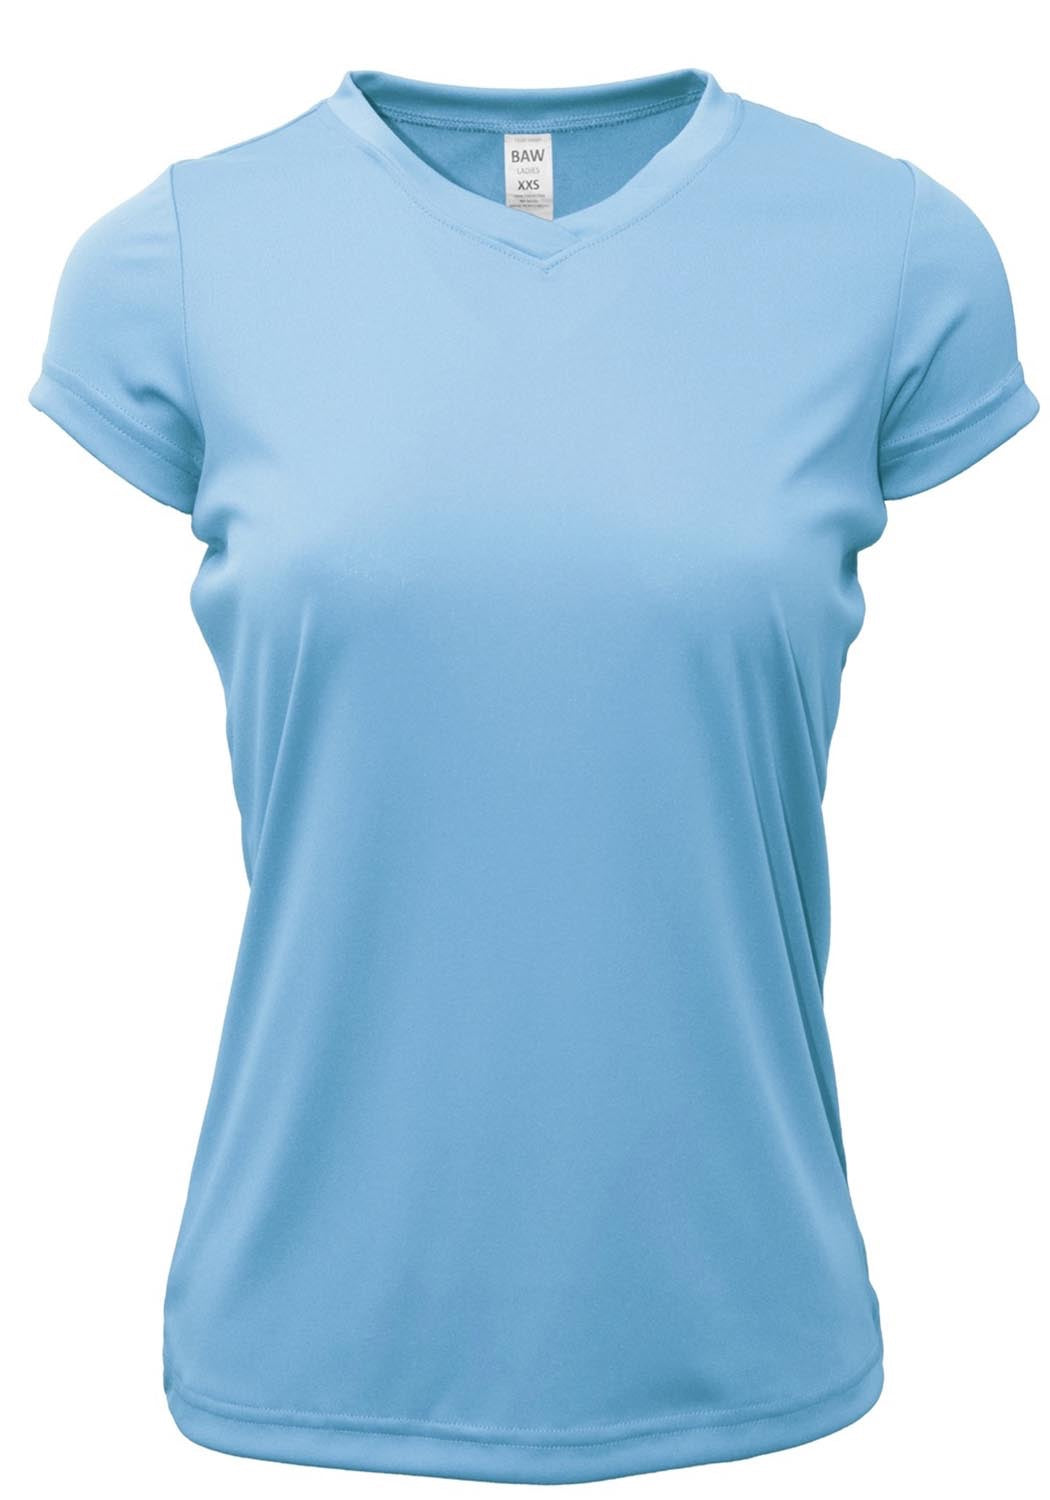 Marika Tek Dry-Wik T- shirt Mint Green/Blue Activewear Women's